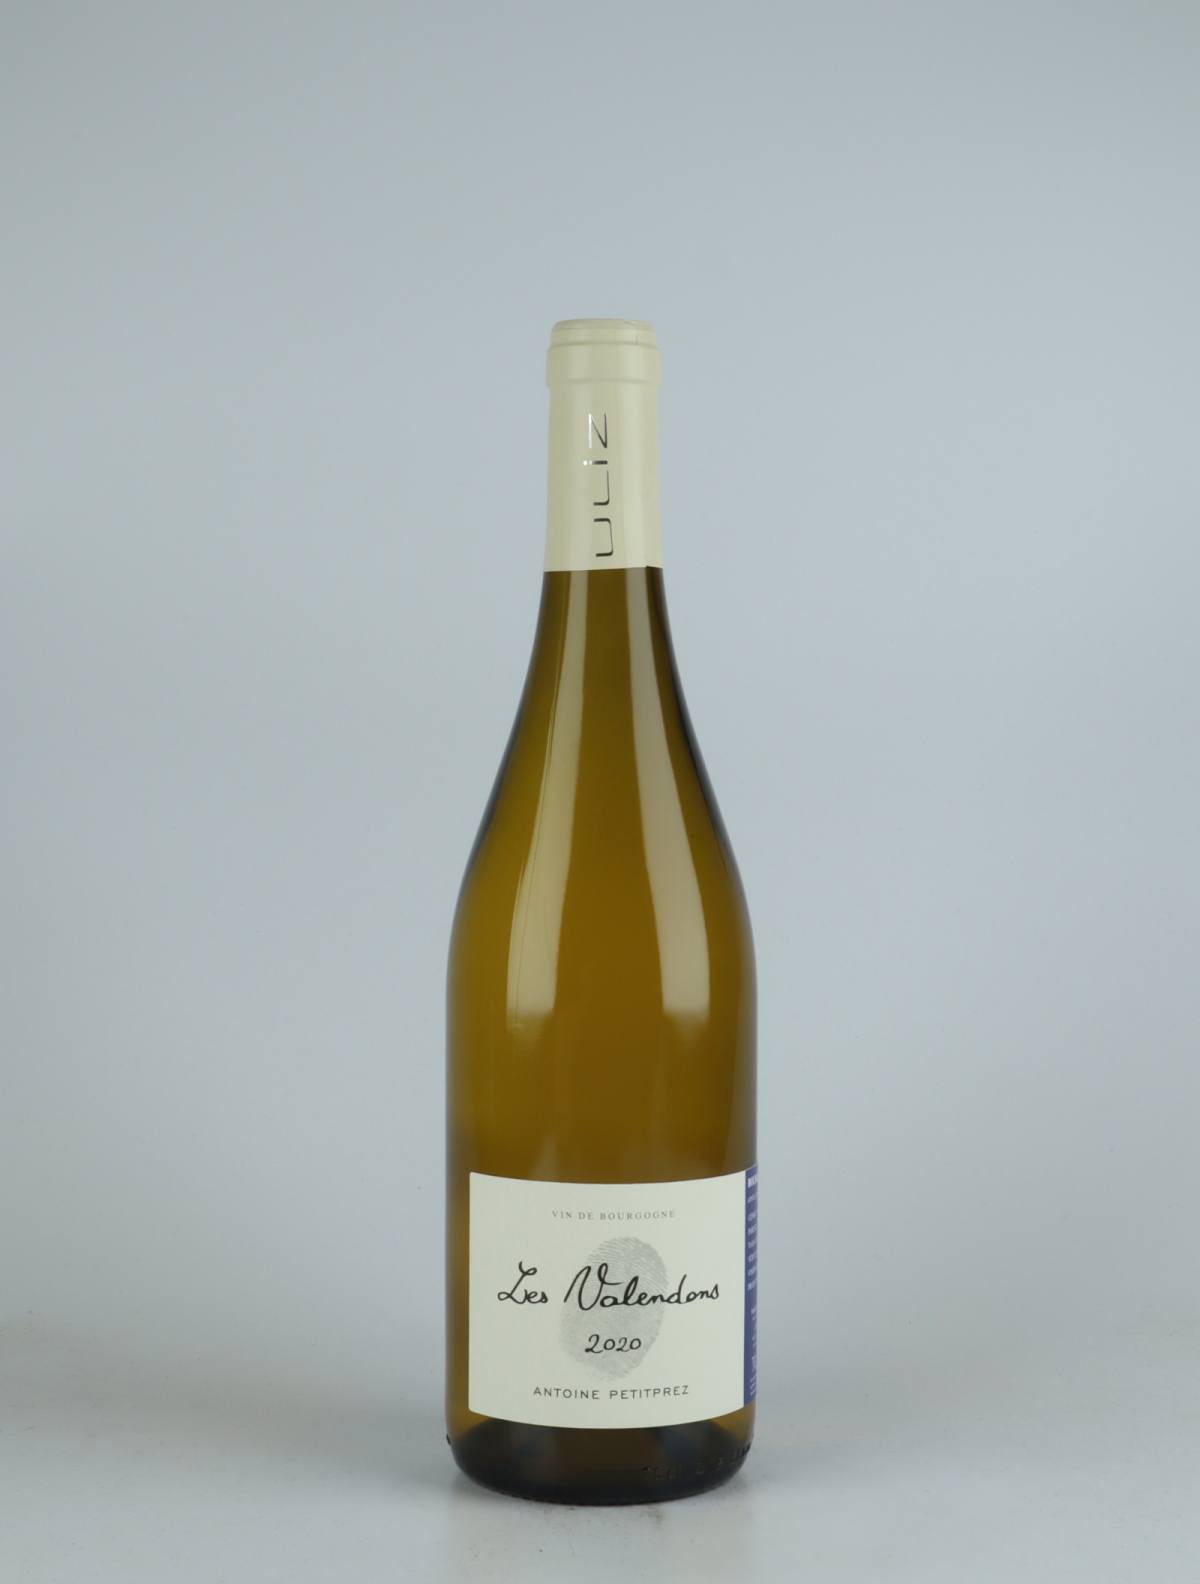 En flaske 2020 Bourgogne Aligoté - Les Valendons Hvidvin fra Antoine Petitprez, Bourgogne i Frankrig